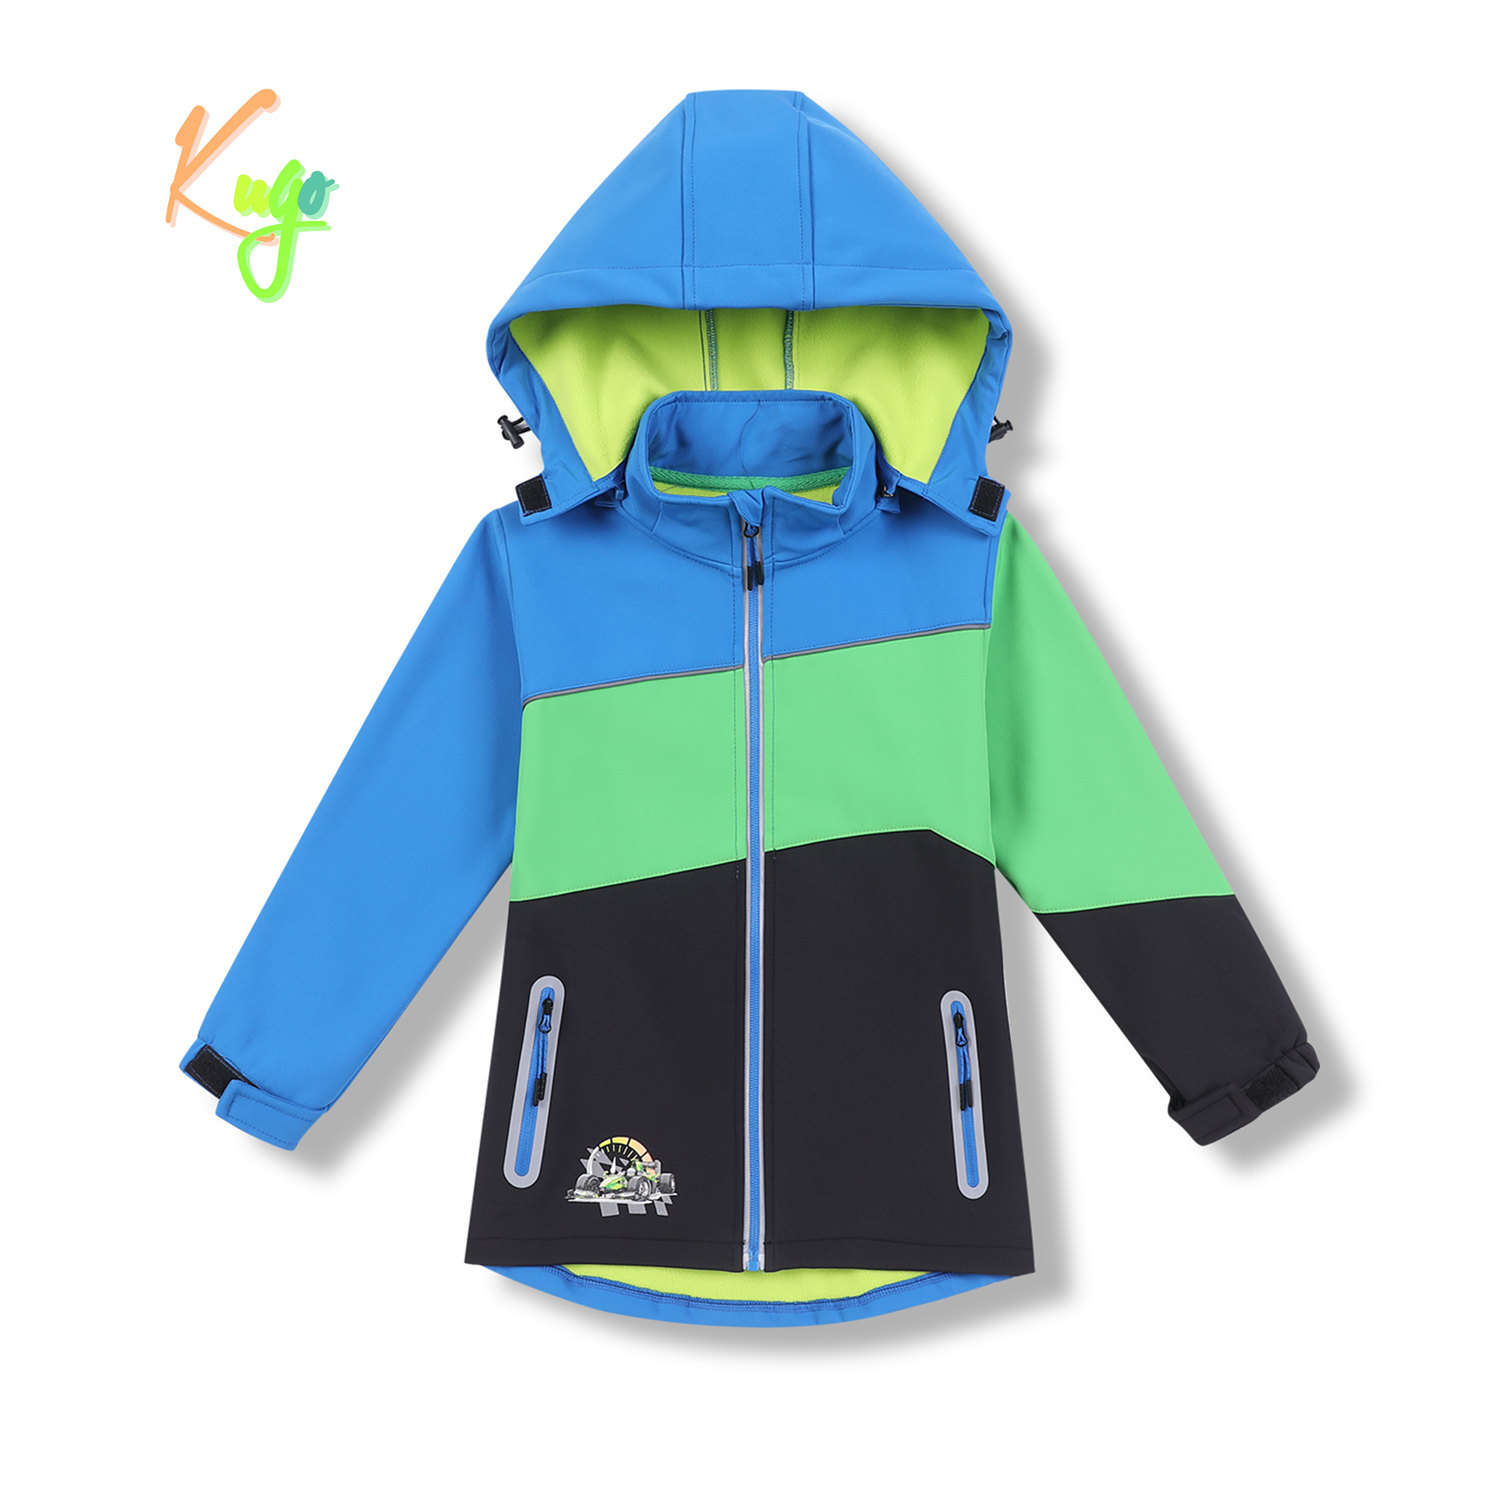 Chlapecká softshellová bunda, zateplená - KUGO HK5602, modrá / zelená / černá Barva: Modrá, Velikost: 122